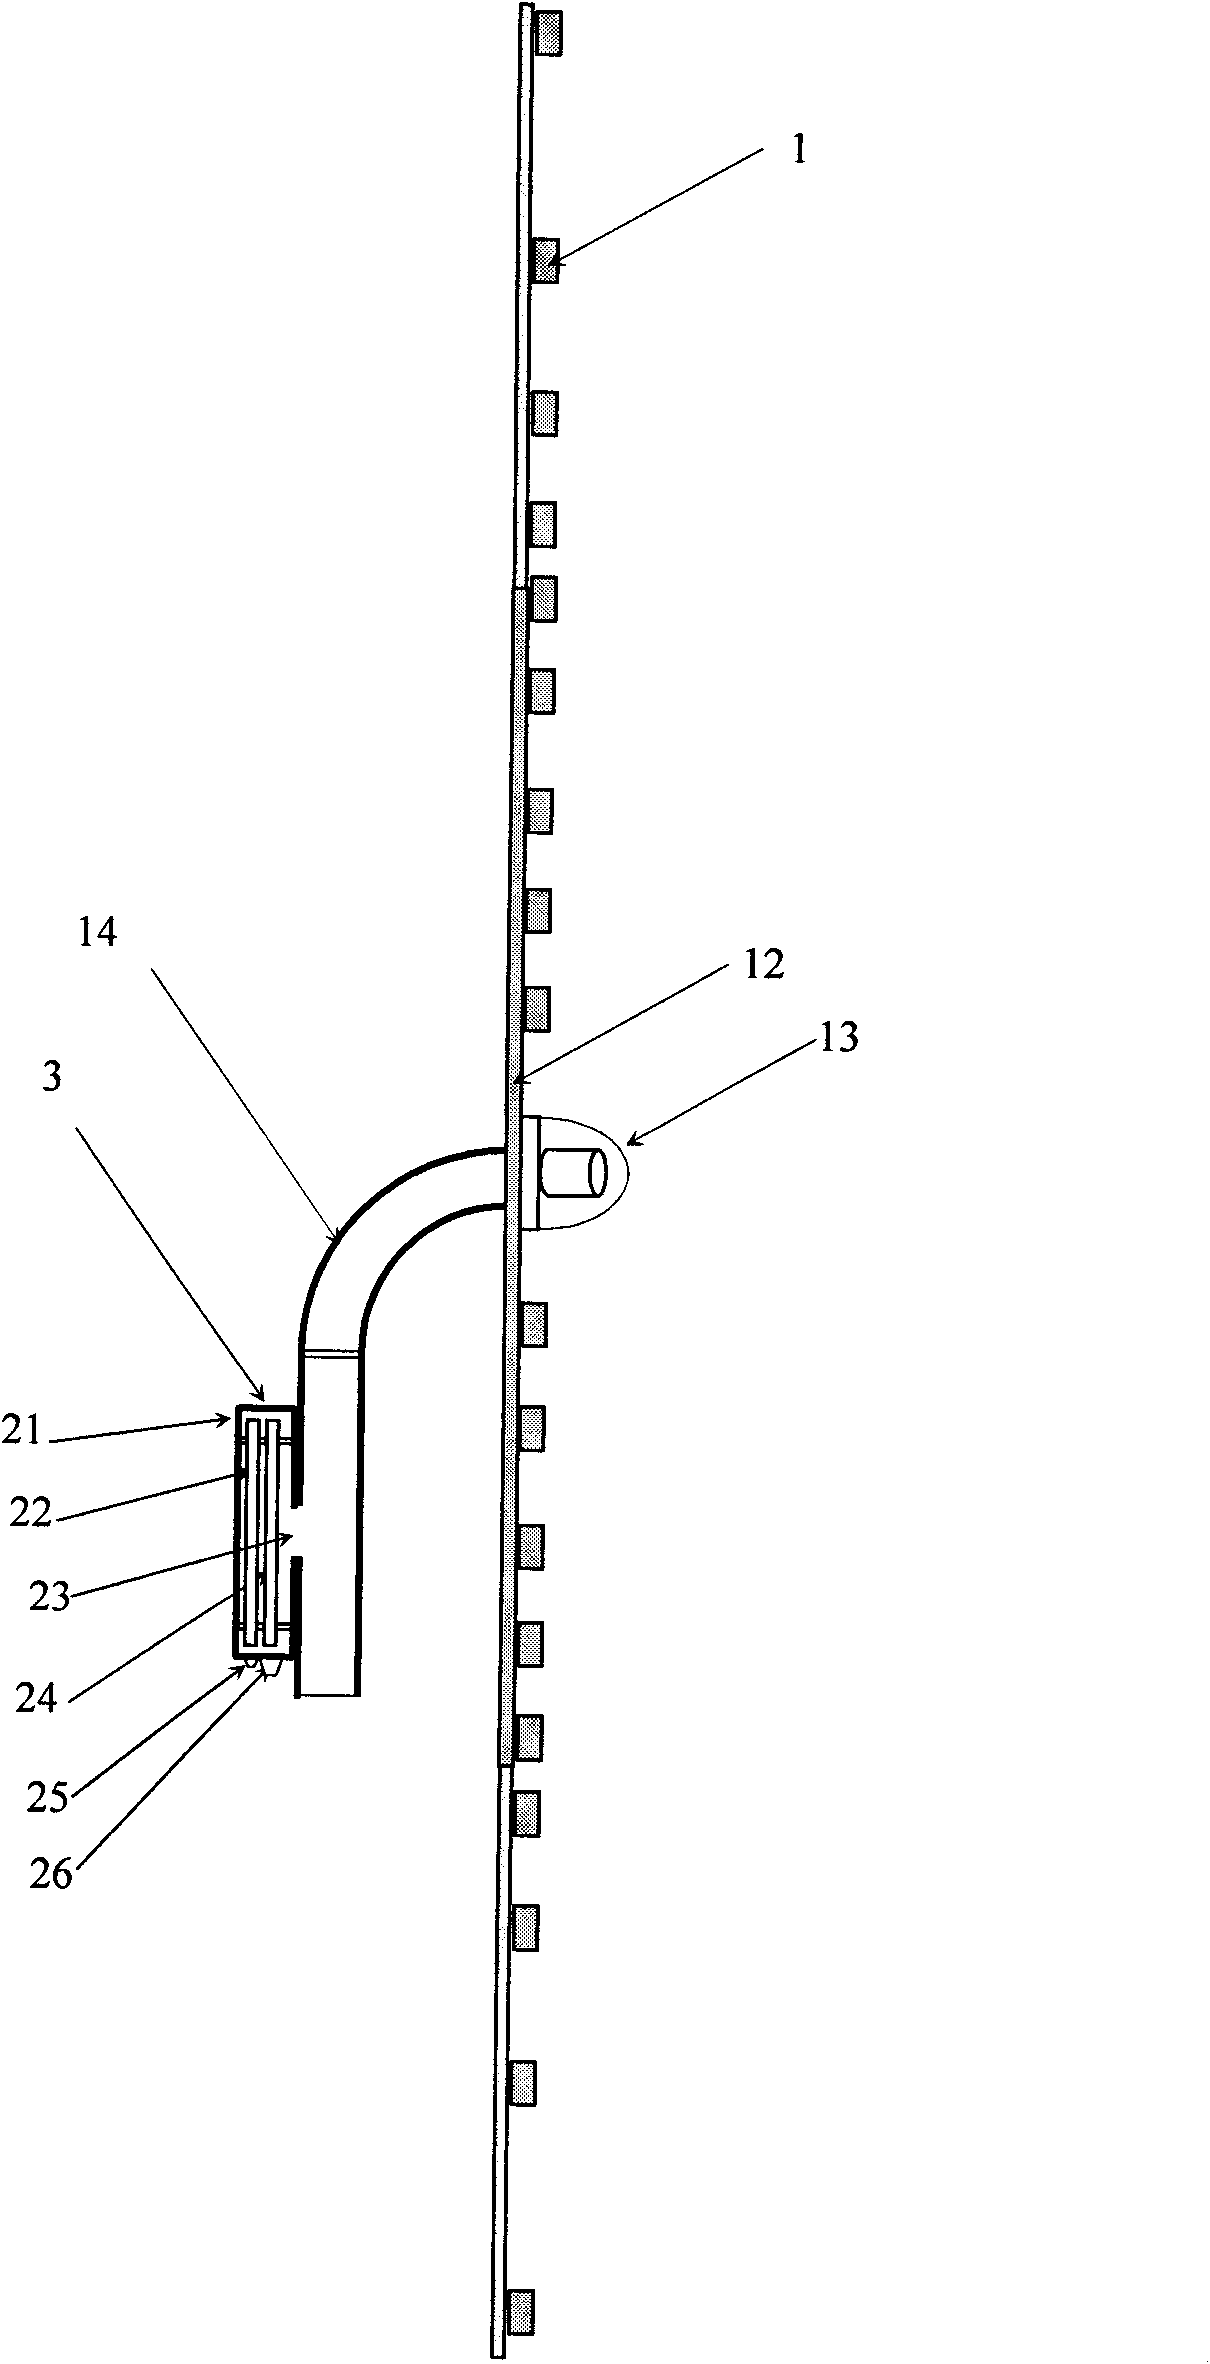 Planar spiral microphone array